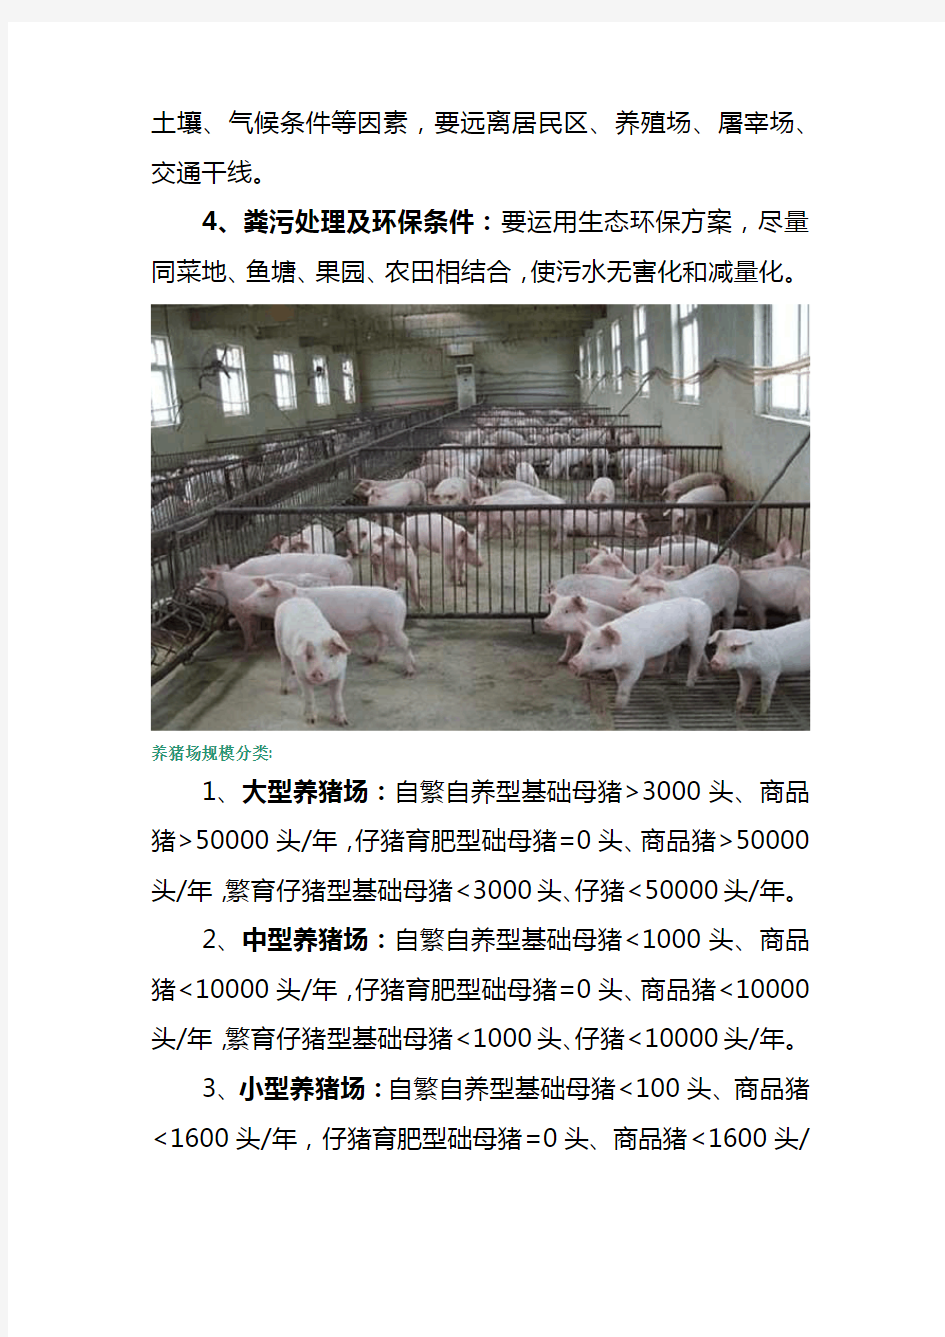 标准化养猪场建设方案